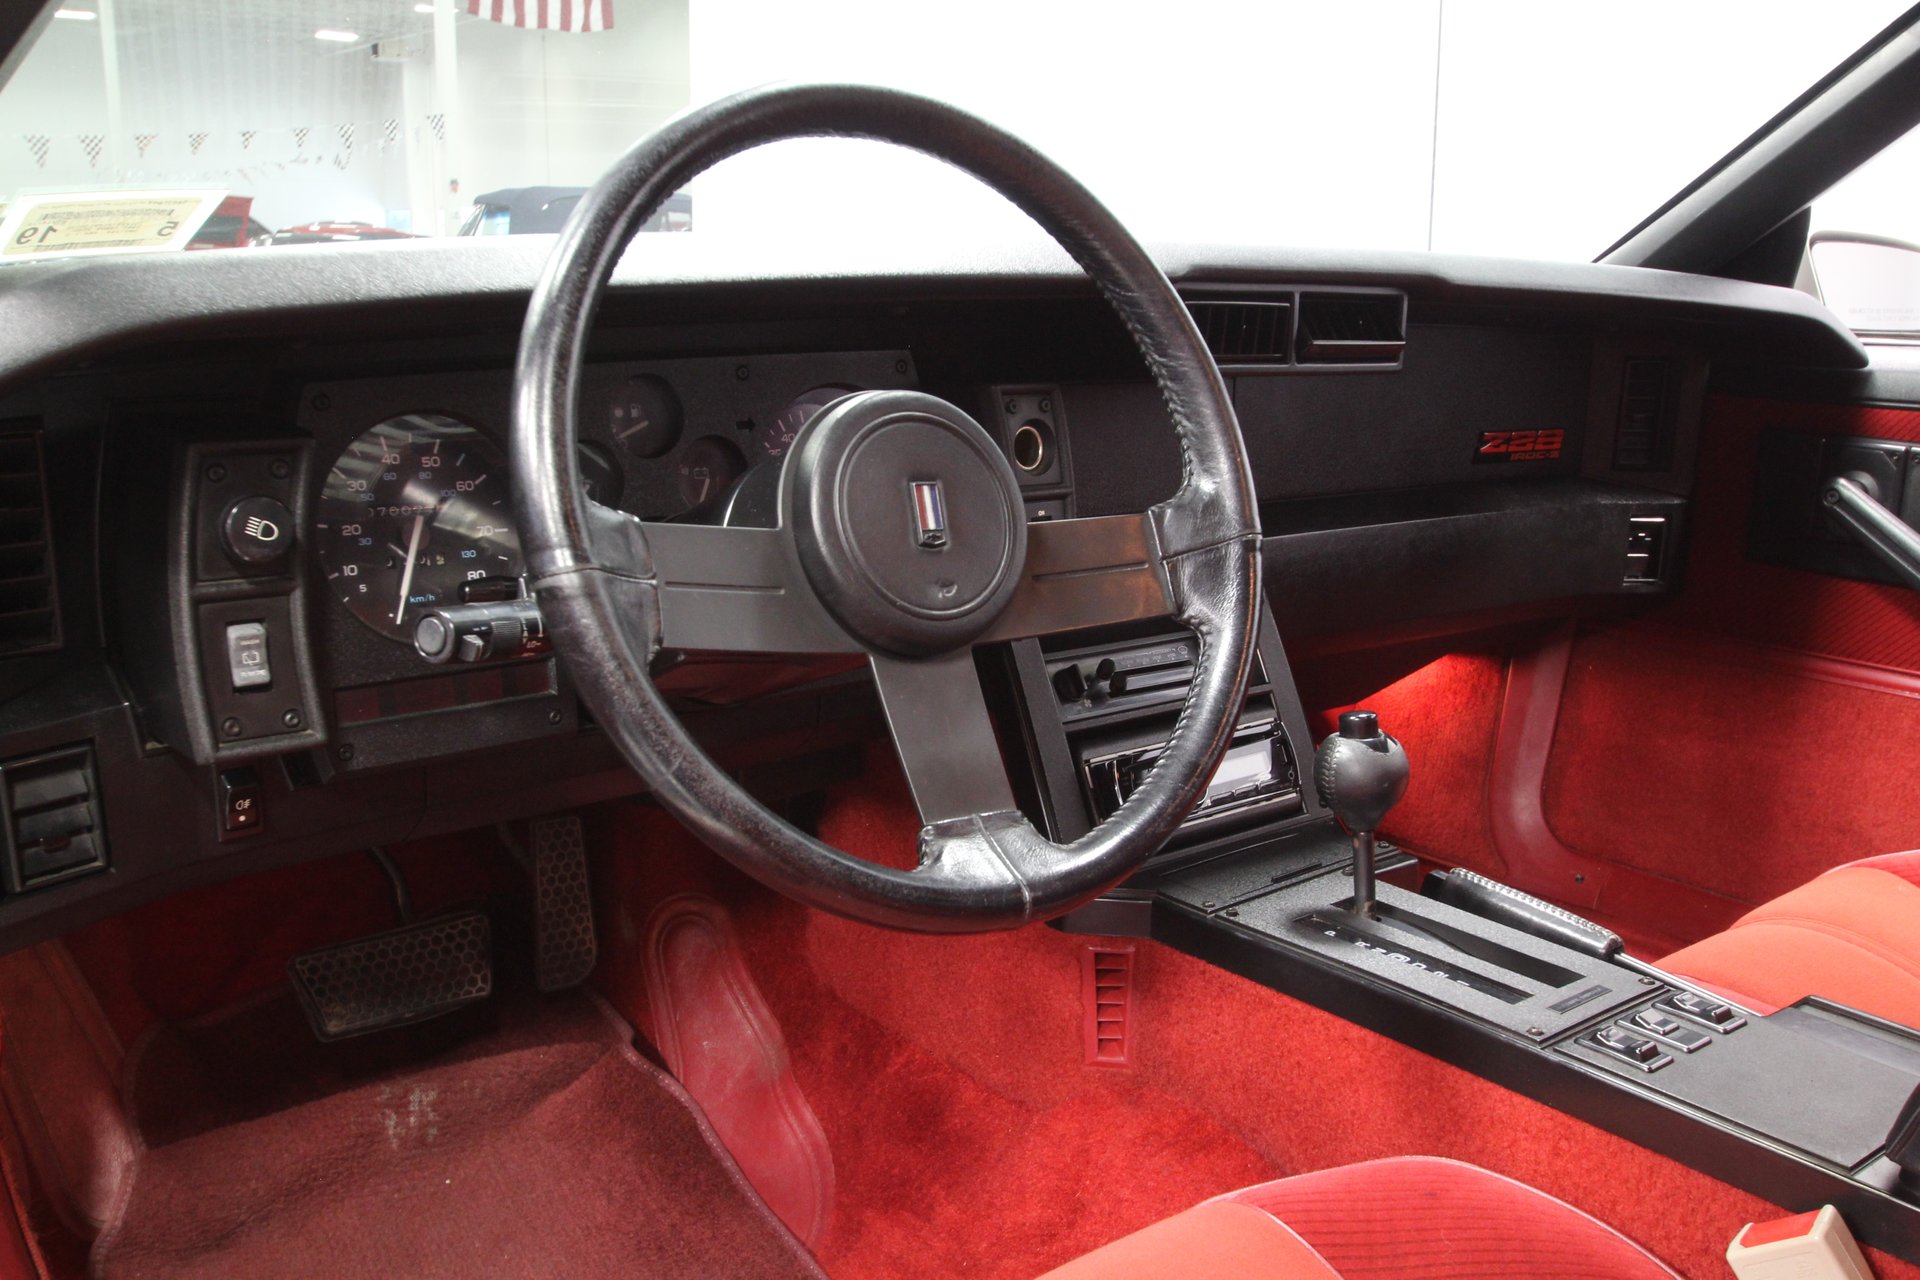 1985 Chevrolet Camaro Iroc Z For Sale 95775 Mcg